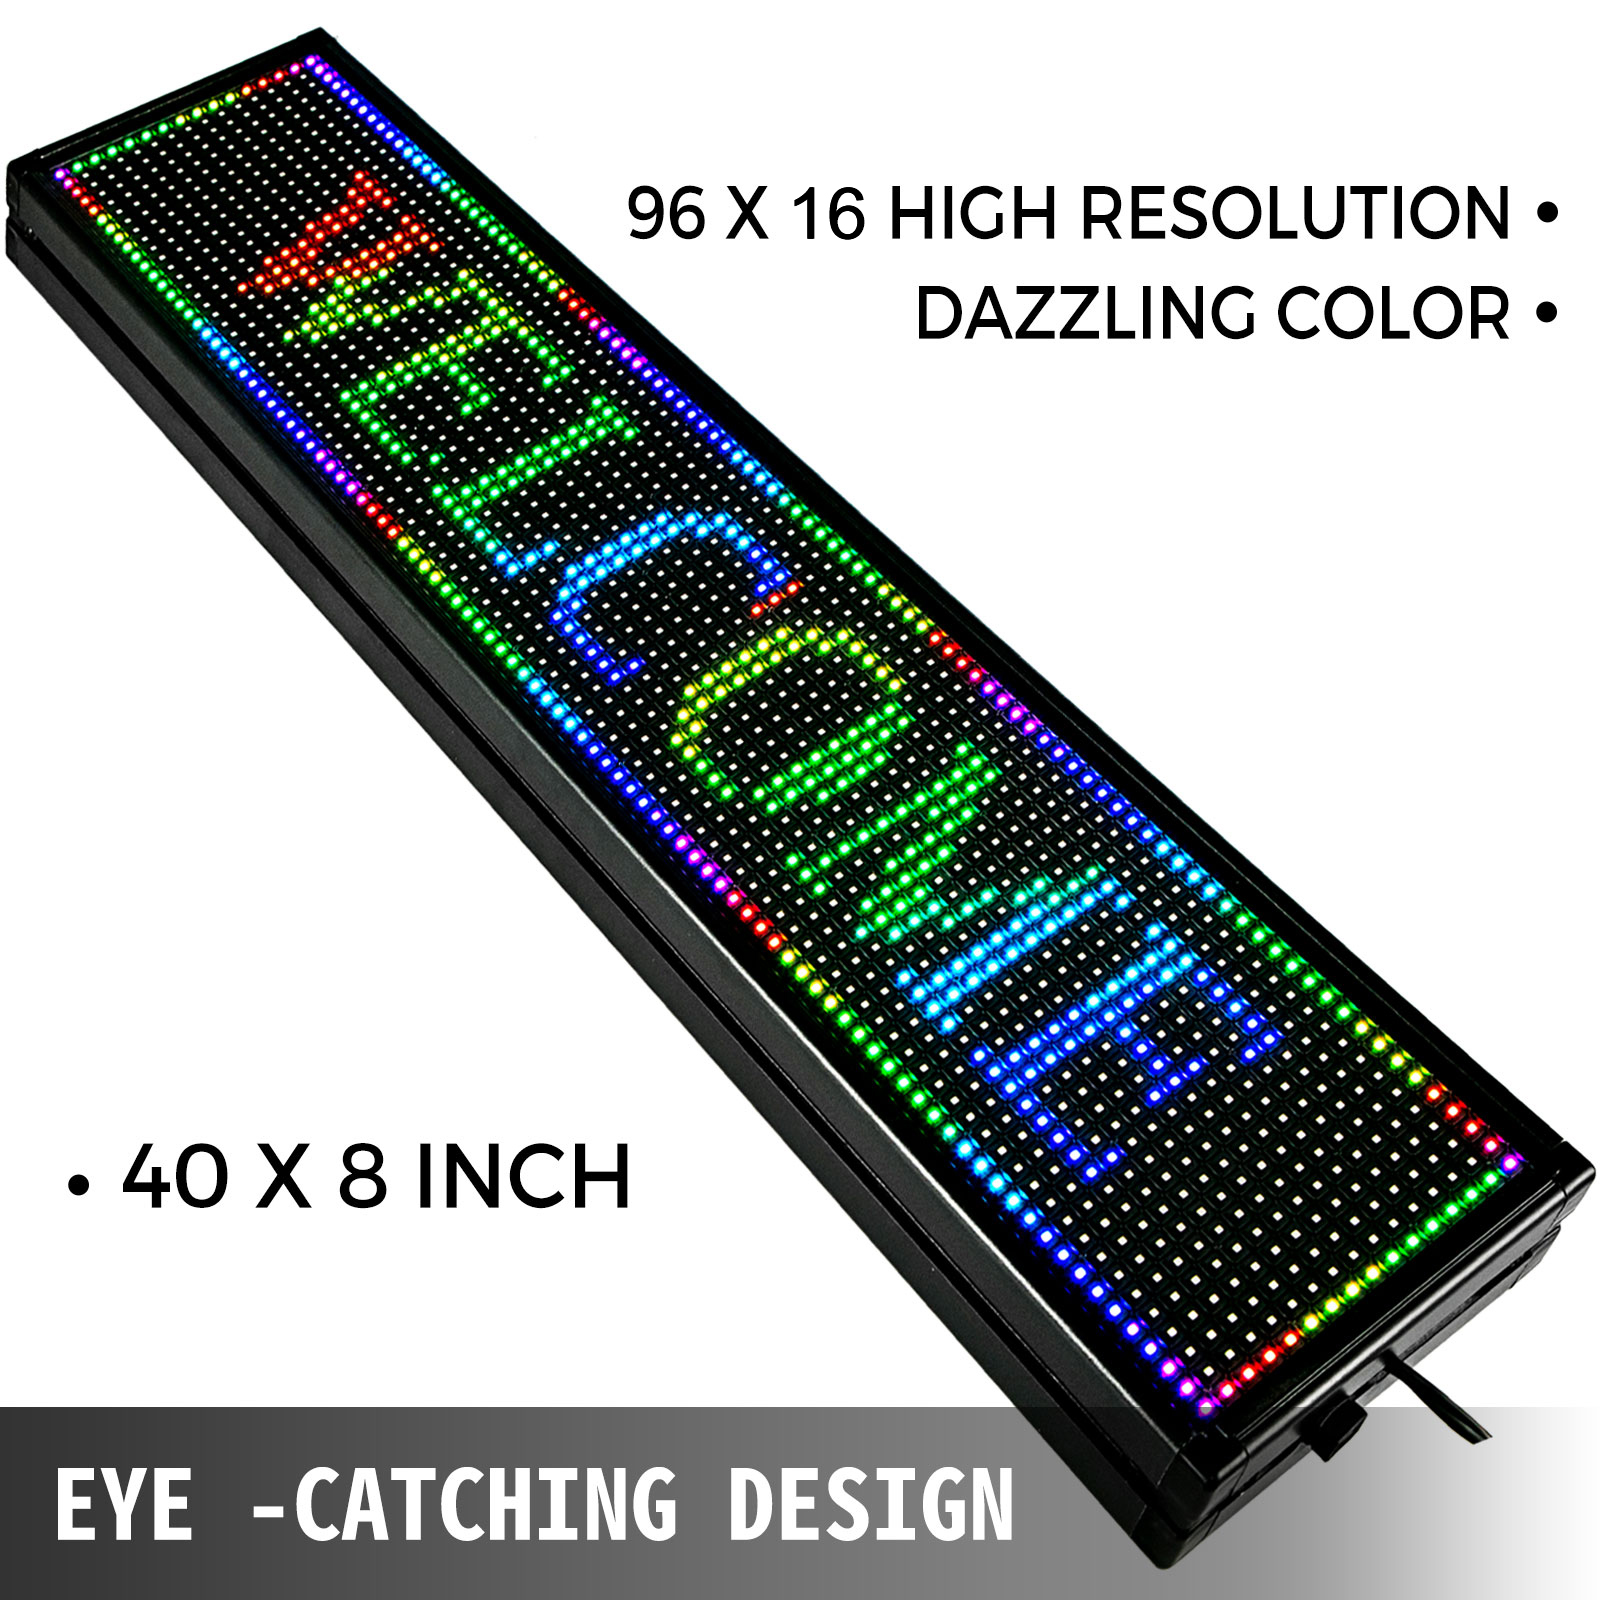 Panneaux lumineux à led - tous les fournisseurs - panneaux lumineux -  panneau led - panneau rétro-éclairé - panneau d'affichage électronique - panneau  lumineux - panneau d'affichage dynamique